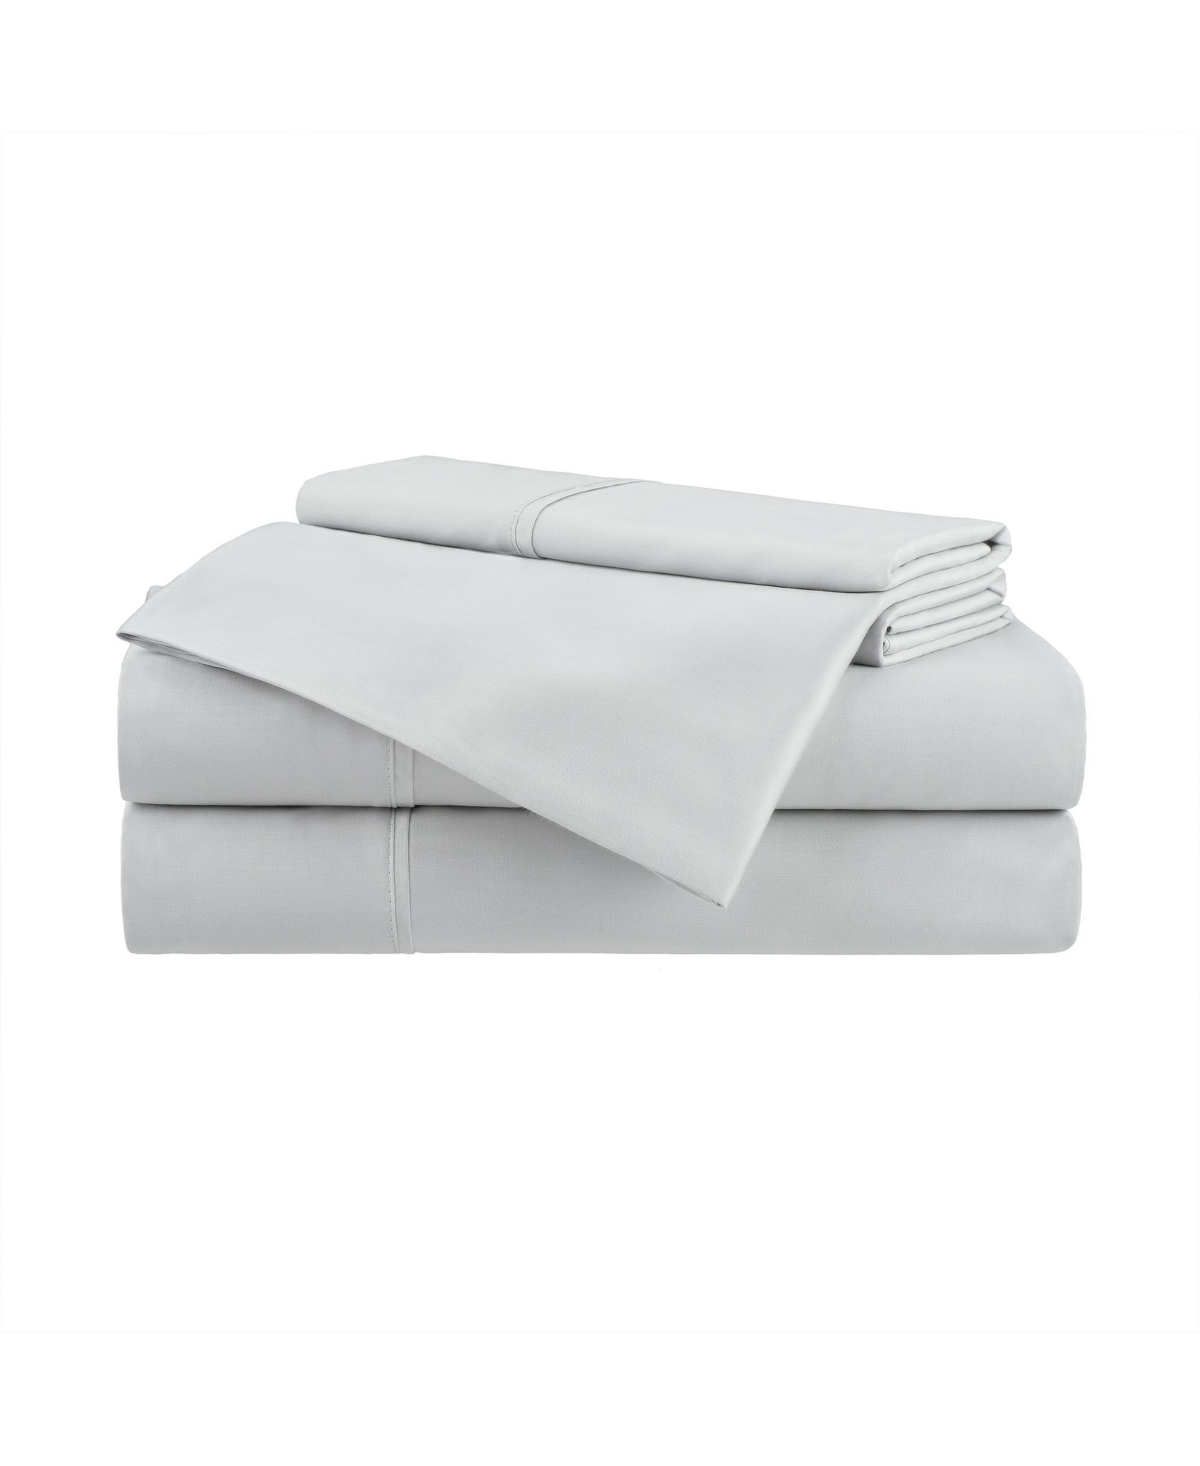 Aston And Arden Eucalyptus Tencel Queen Sheet Set, 1 Flat Sheet, 1 Fitted Sheet, 2 Pillowcases, Ultra Soft Fabric, B In Light Grey